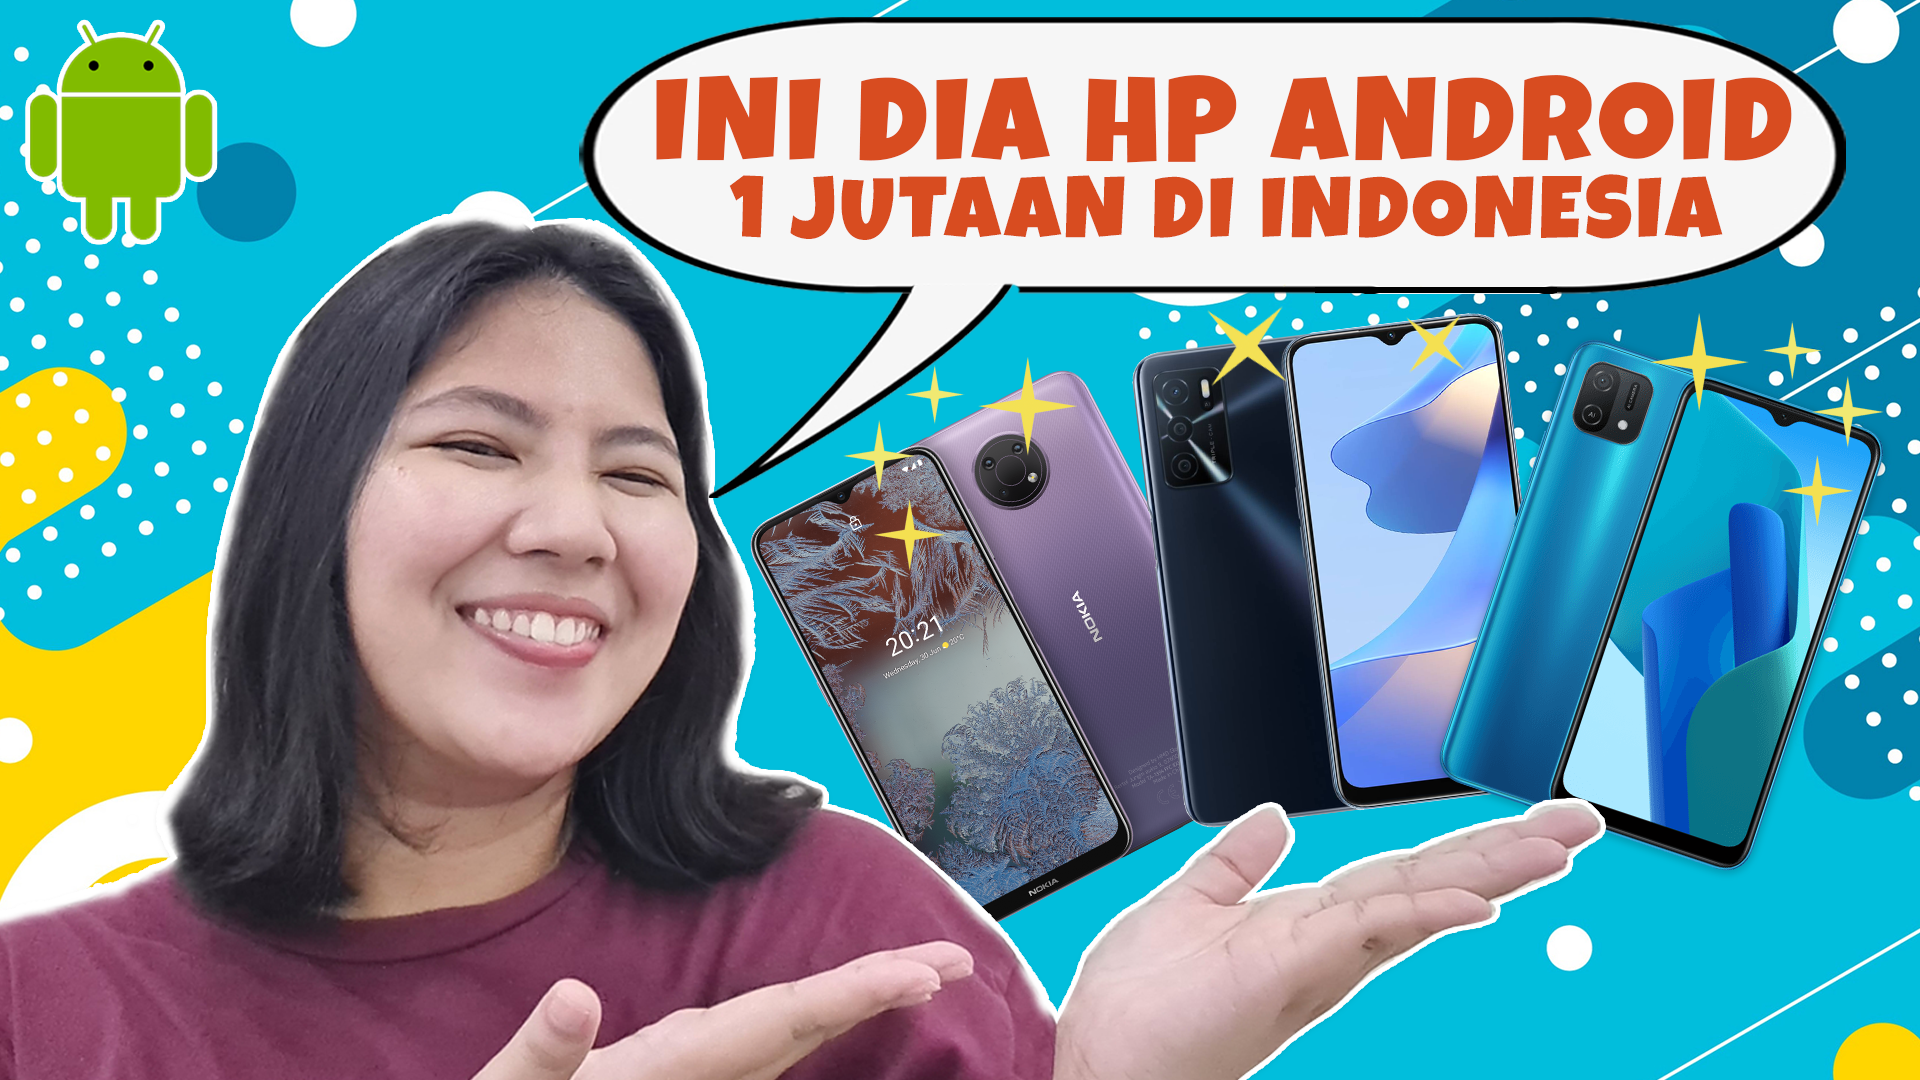 Daftar Harga HP Android Rp 1 Jutaan di Indonesia Berikut Spesifikasinya, Juni 2022